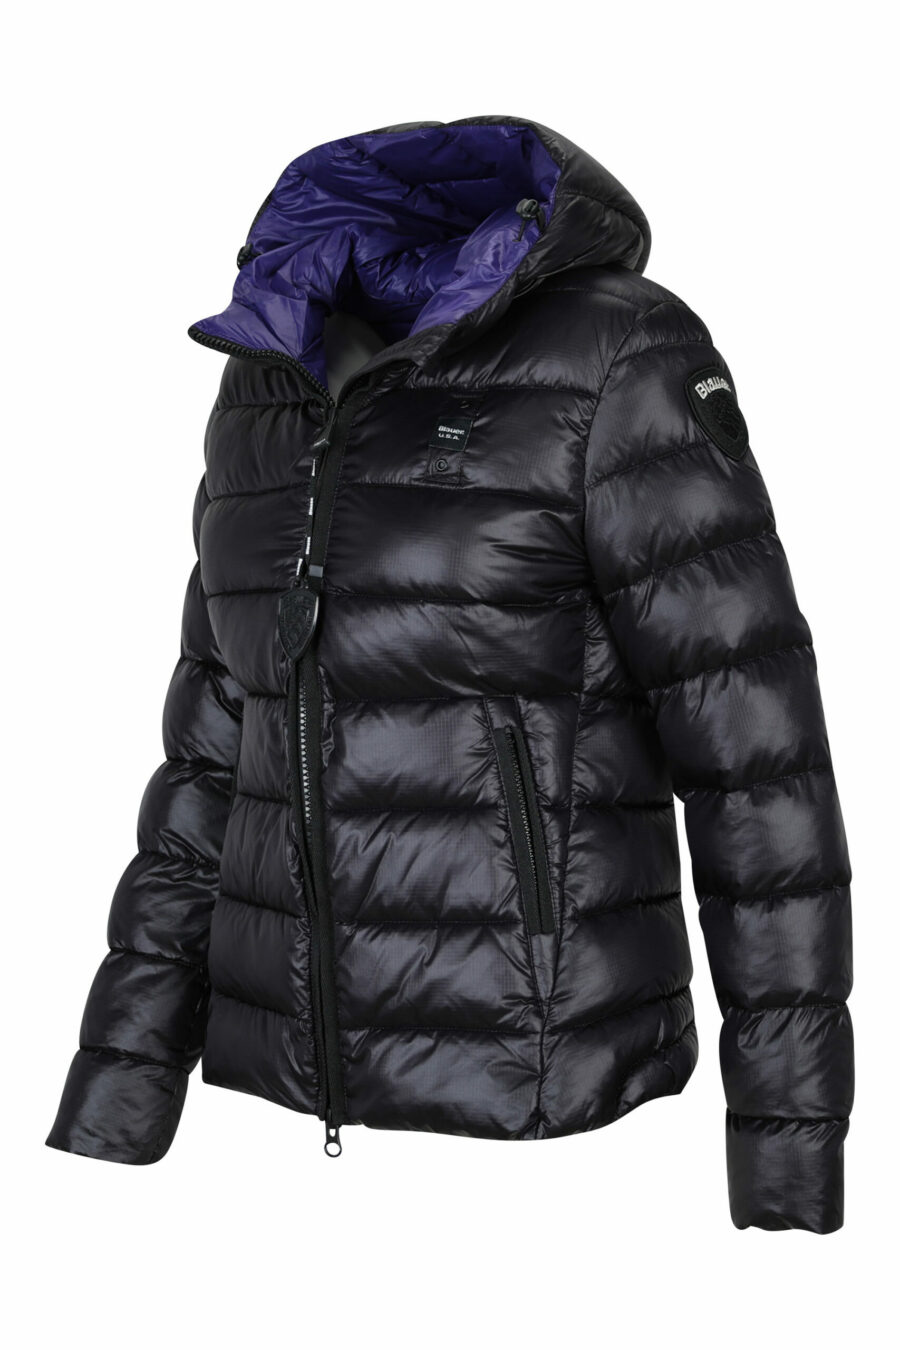 Veste à capuche noire à doublure droite et intérieur violet avec logo - 8058610683146 2 à l'échelle